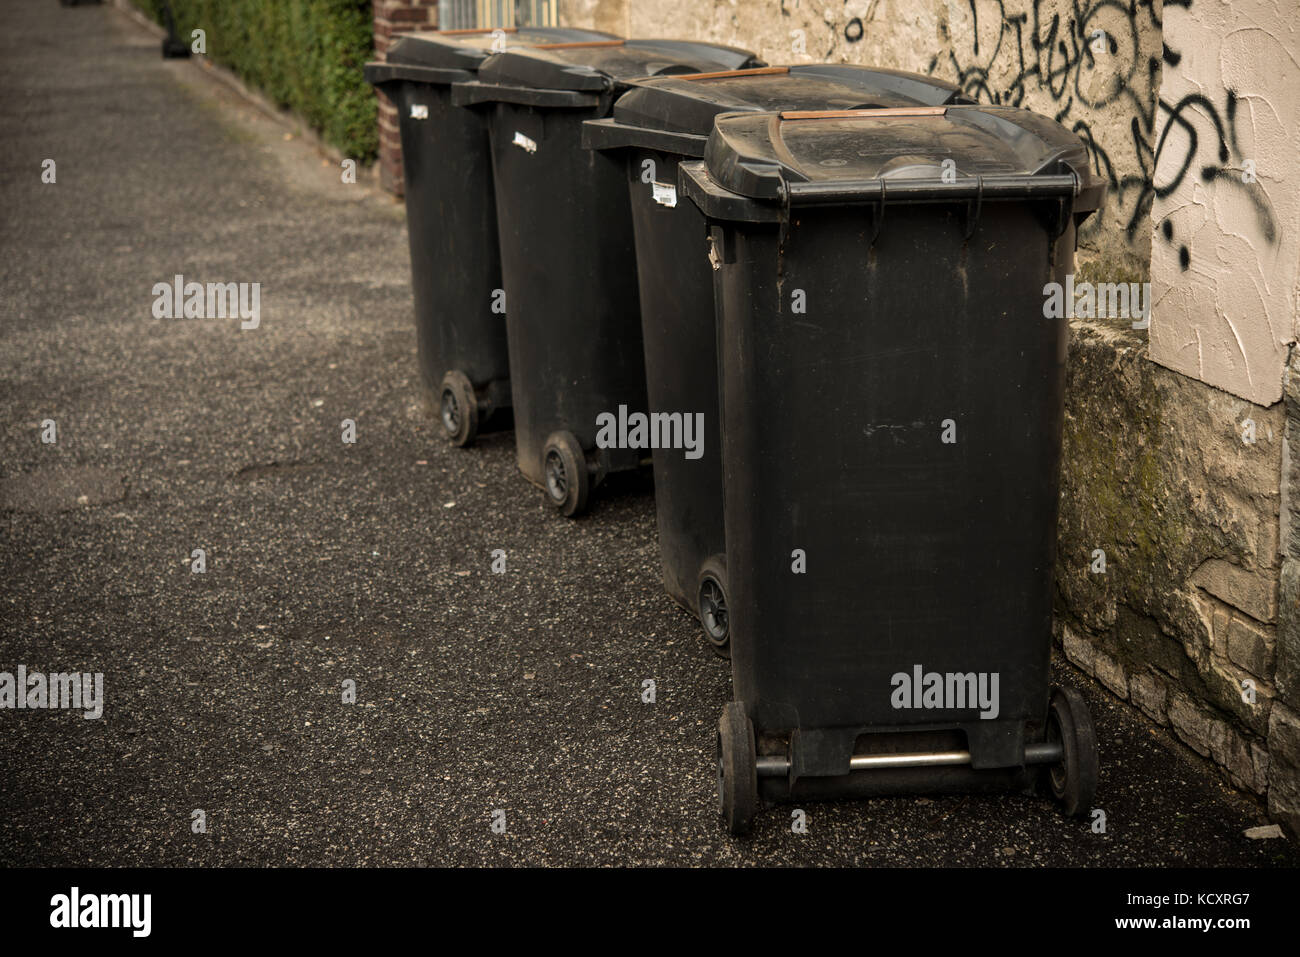 https://c8.alamy.com/comp/KCXRG7/four-black-trash-cans-dust-bins-on-the-pavement-KCXRG7.jpg